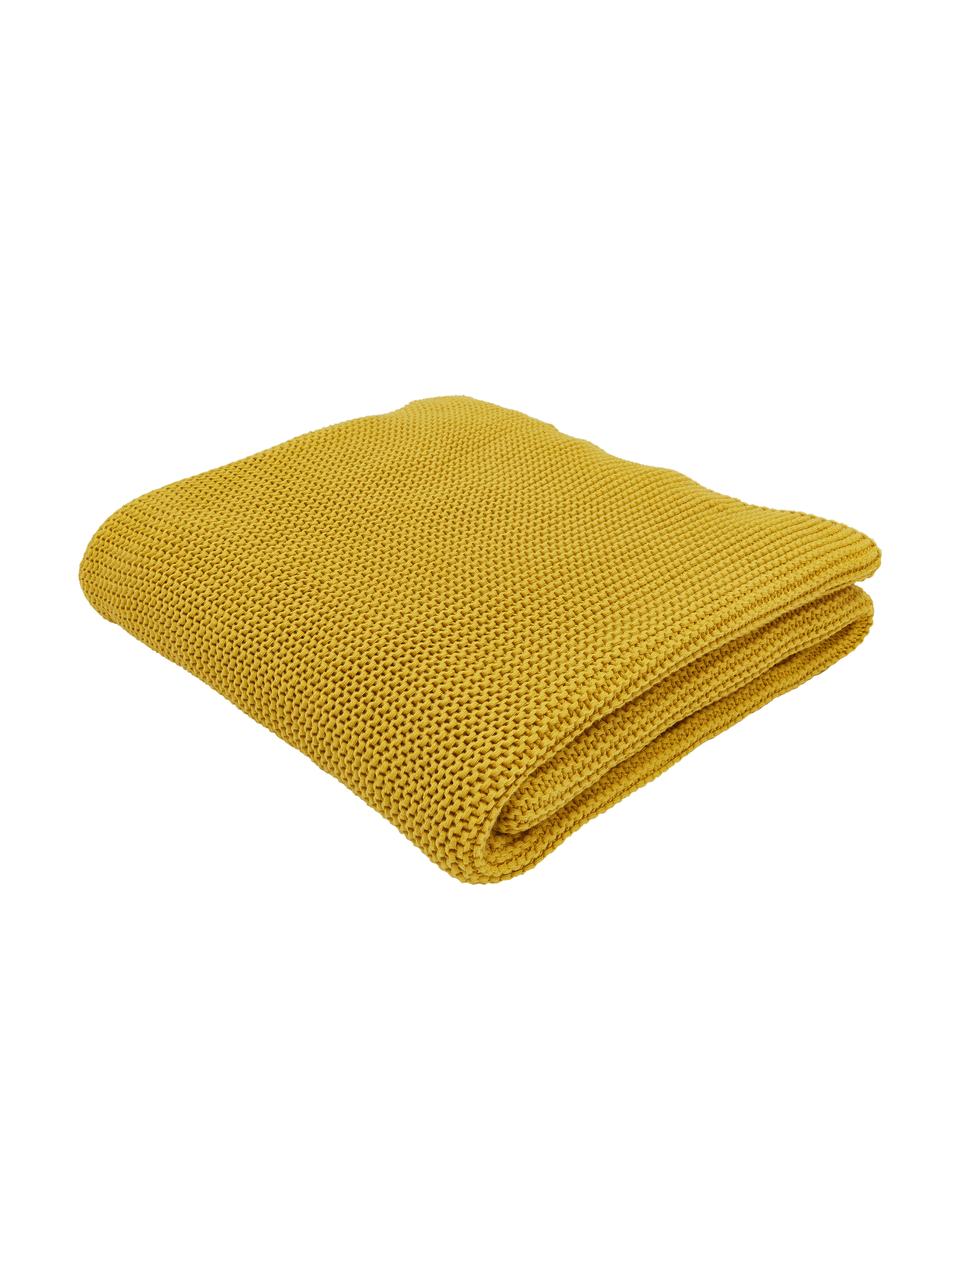 Coperta a maglia in cotone biologico color giallo senape Adalyn, 100% cotone biologico, certificato GOTS, Giallo senape, Larg. 150 x Lung. 200 cm